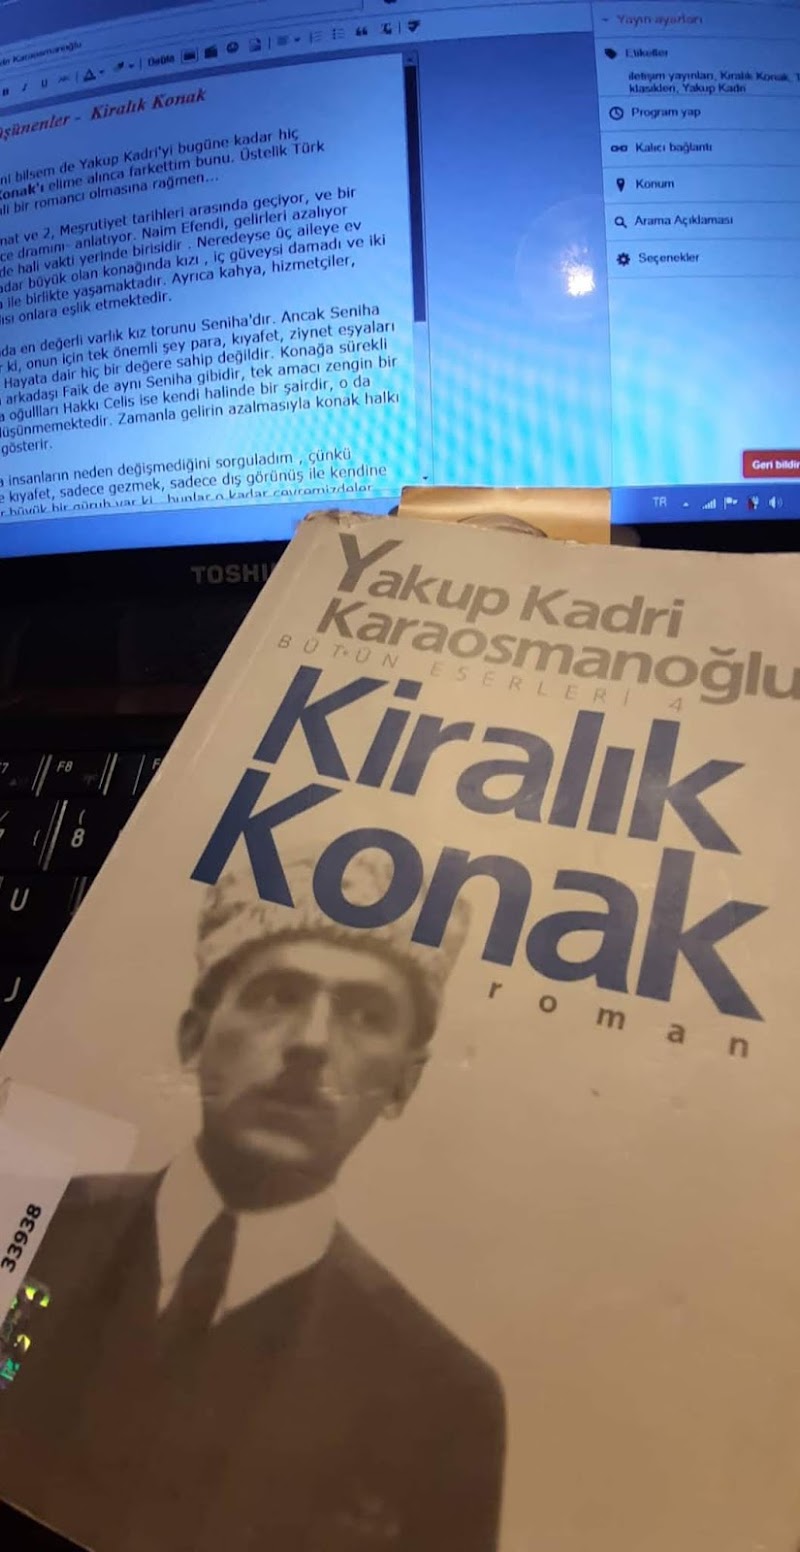 Kiralık Konak - Yakup Kadri Karaosmanoğlu - Kitap Yorumu